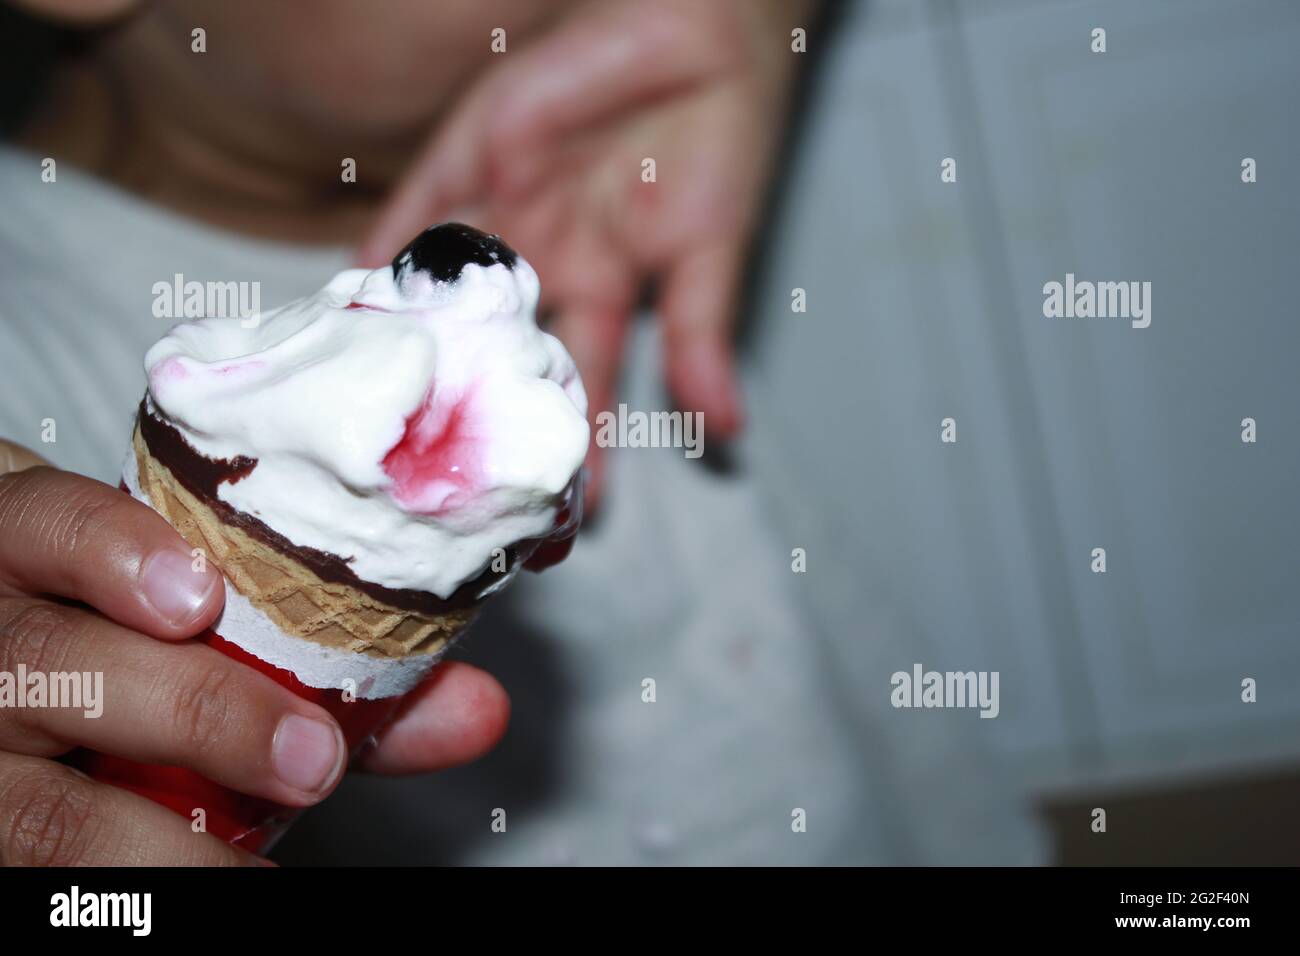 Un enfant qui mange de la glace de cône photographie en gros plan. Banque D'Images